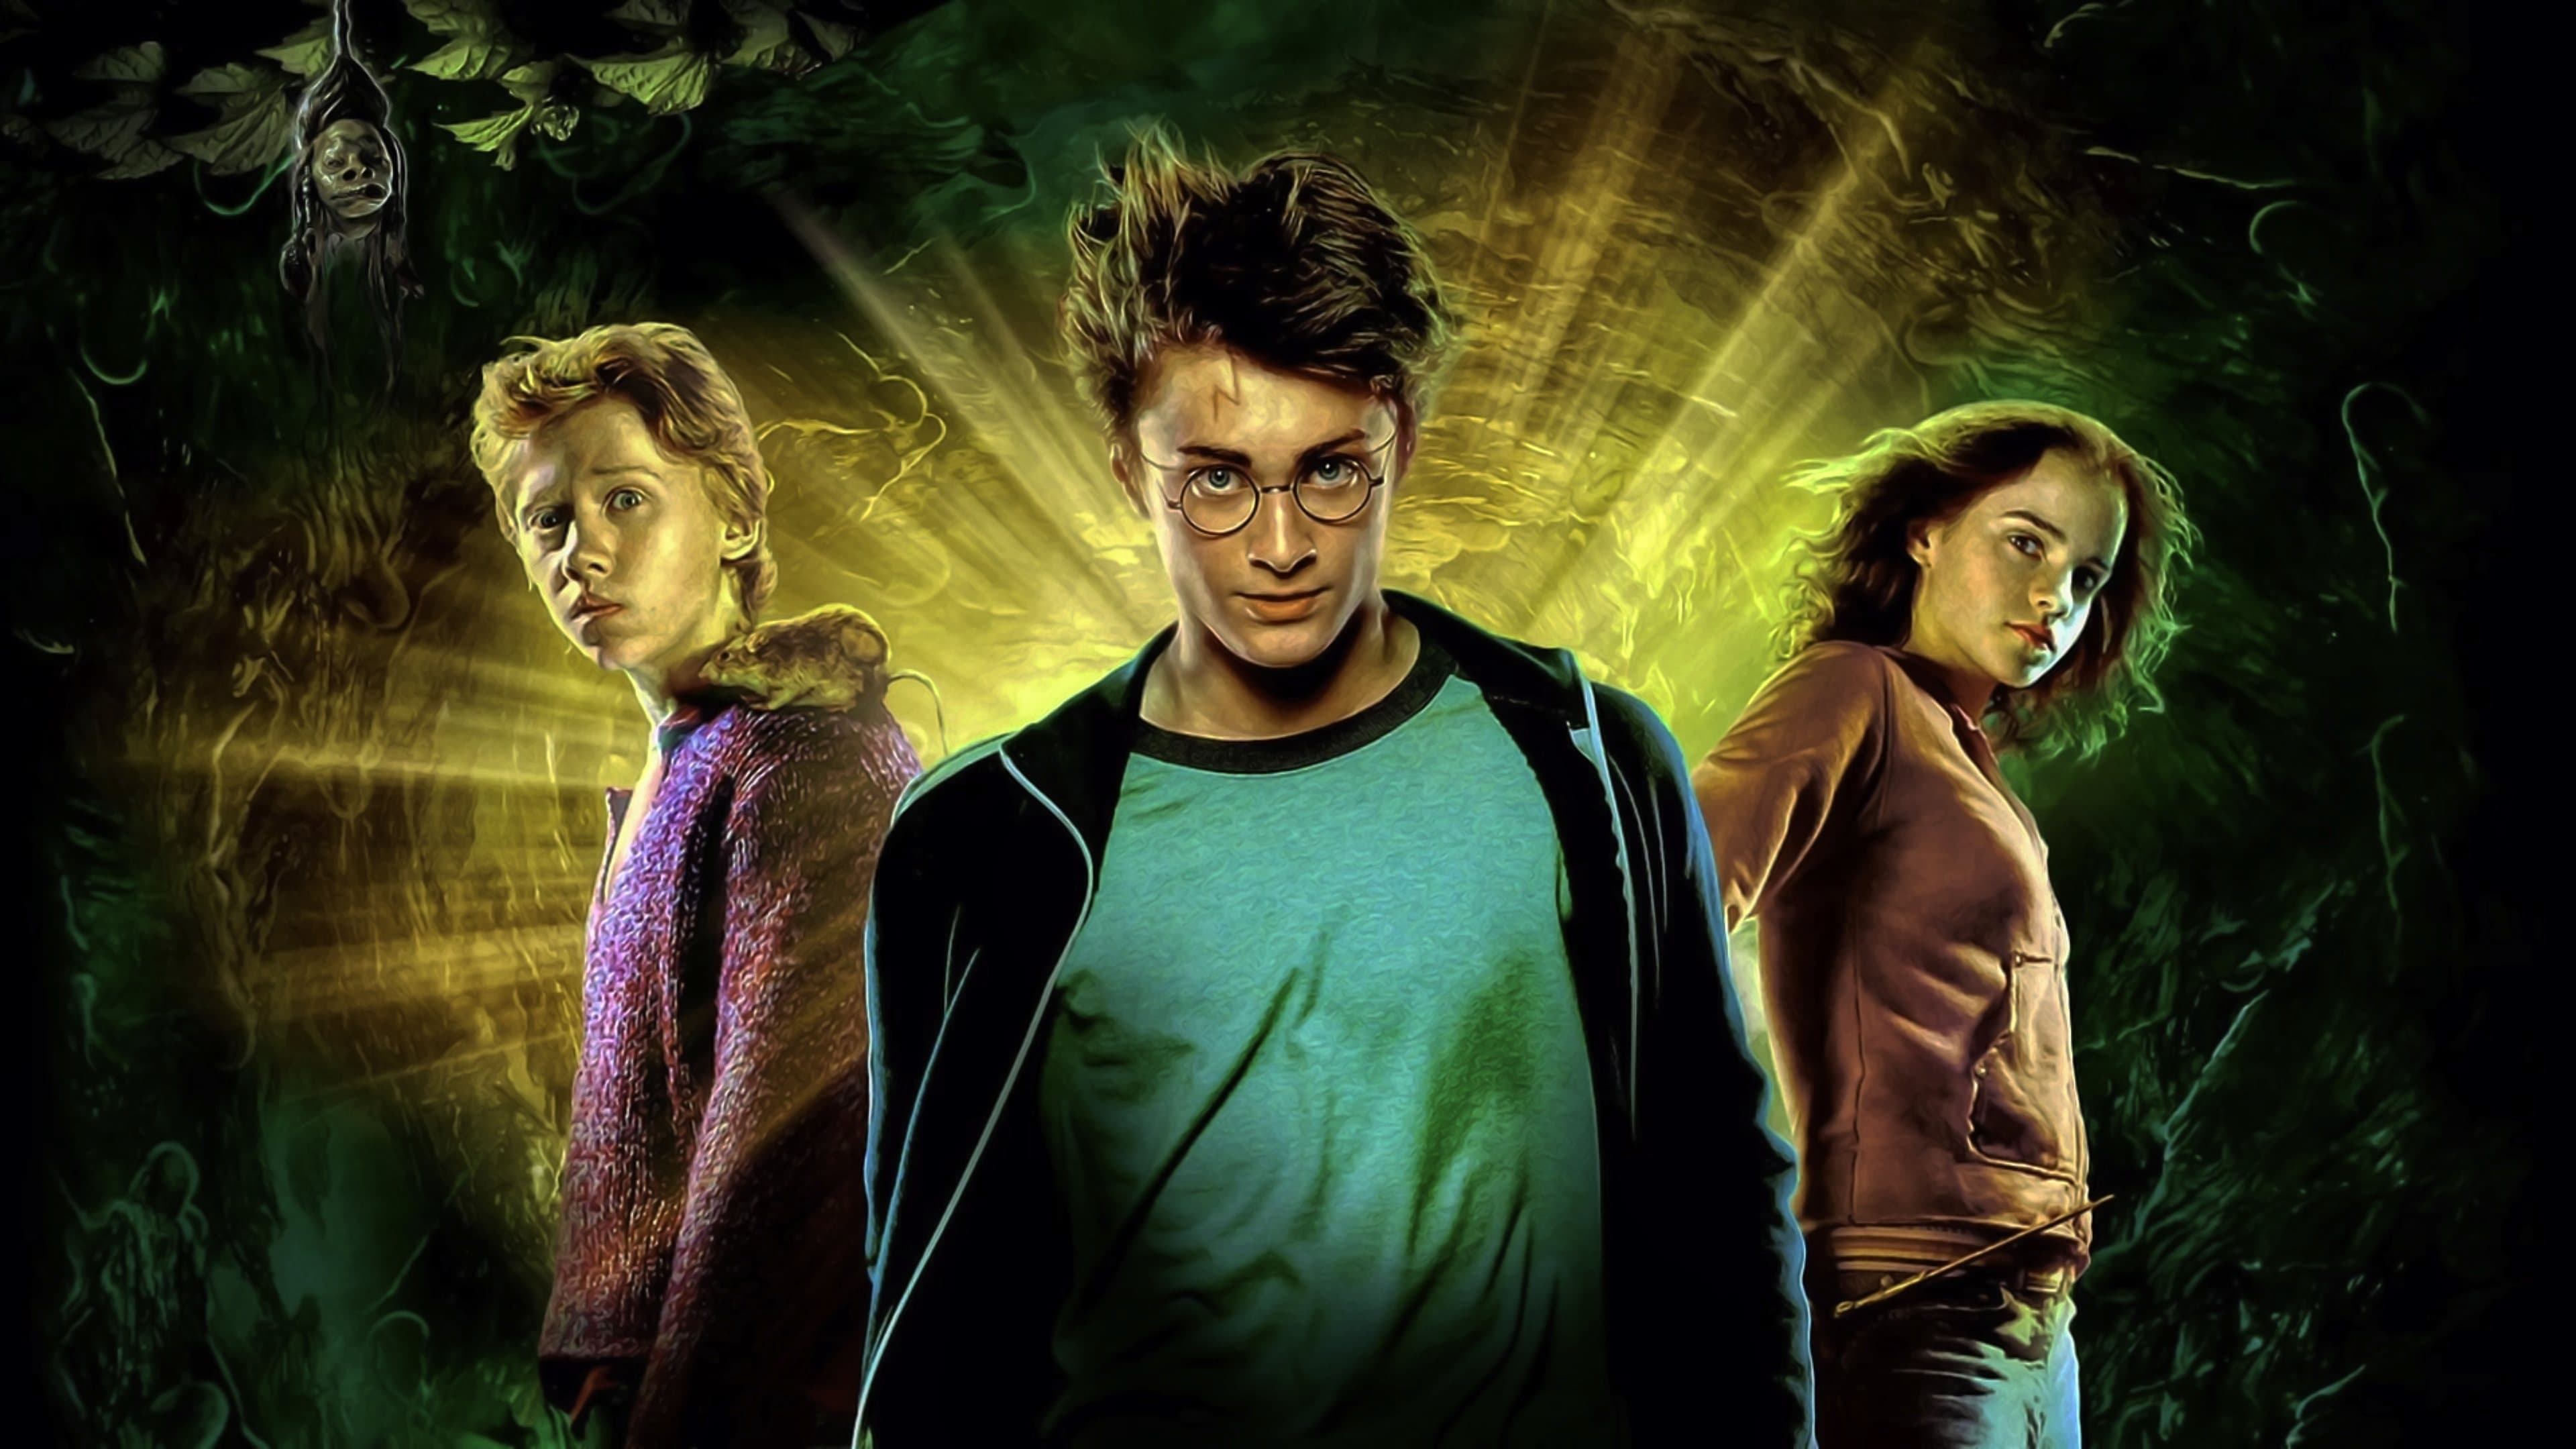 Image du film Harry Potter et le Prisonnier d'Azkaban wduoqwcn1xsraausmzfhdwpceixjpg